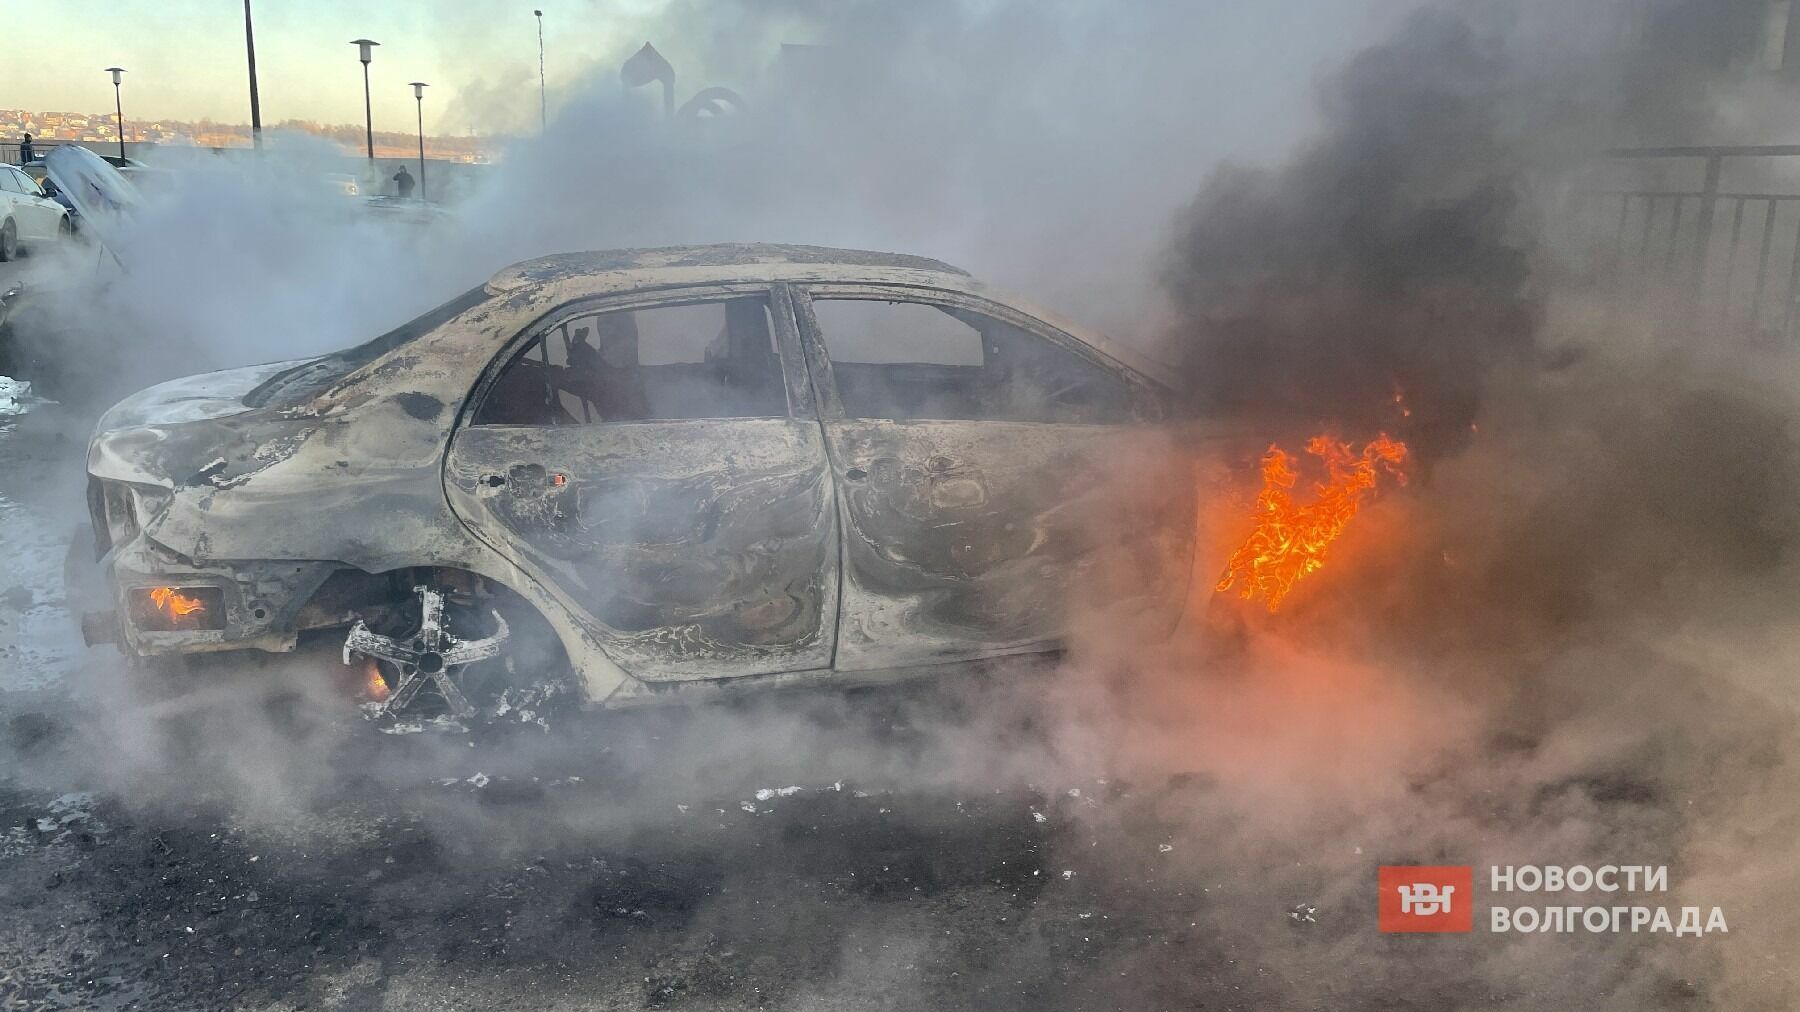 Появилось видео жуткого пожара с машинами в Волгограде